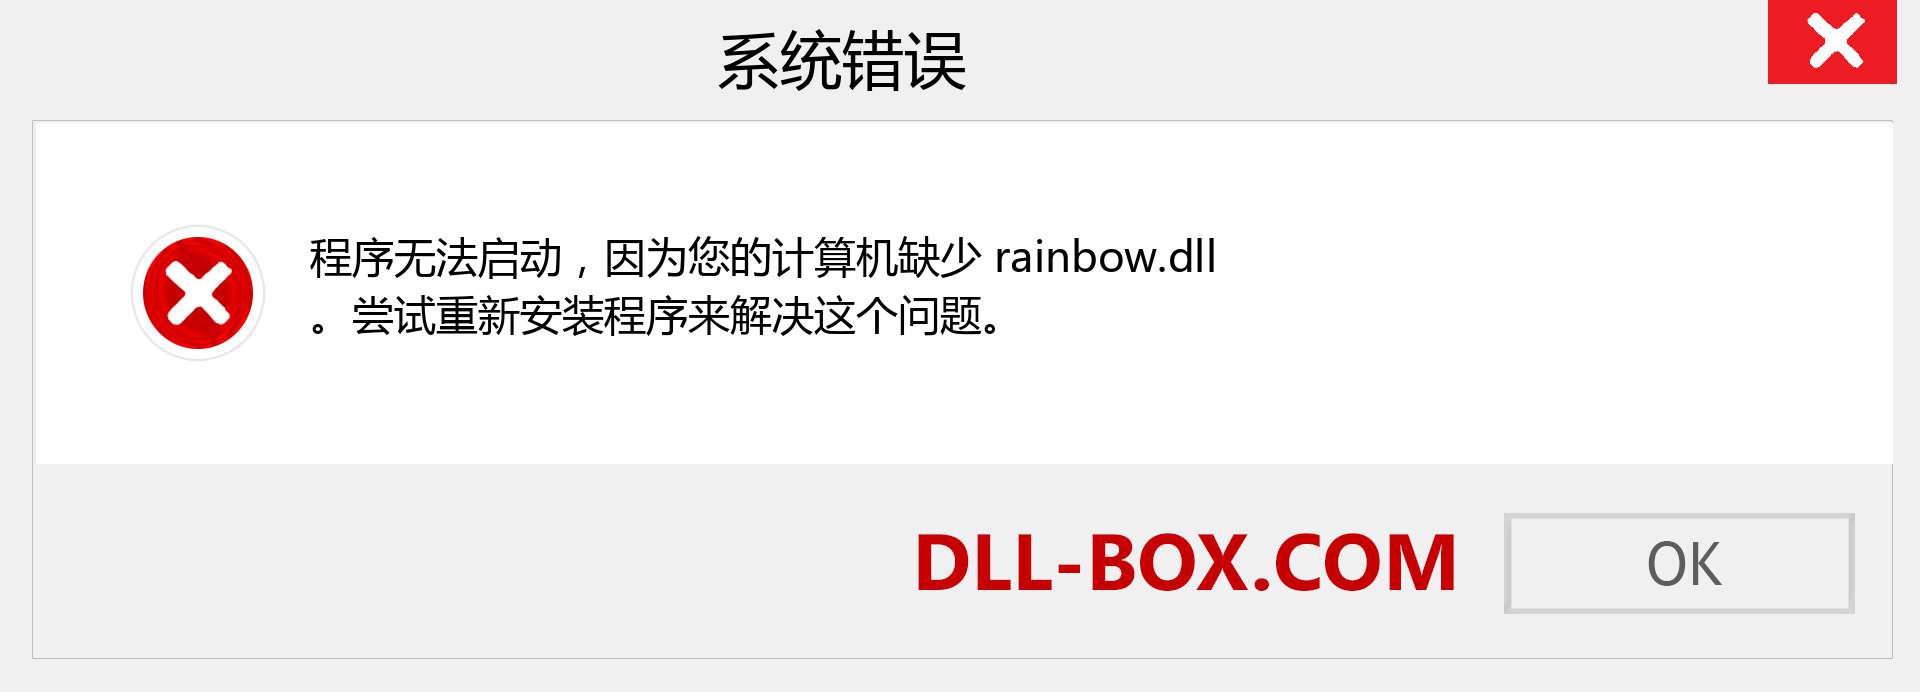 rainbow.dll 文件丢失？。 适用于 Windows 7、8、10 的下载 - 修复 Windows、照片、图像上的 rainbow dll 丢失错误